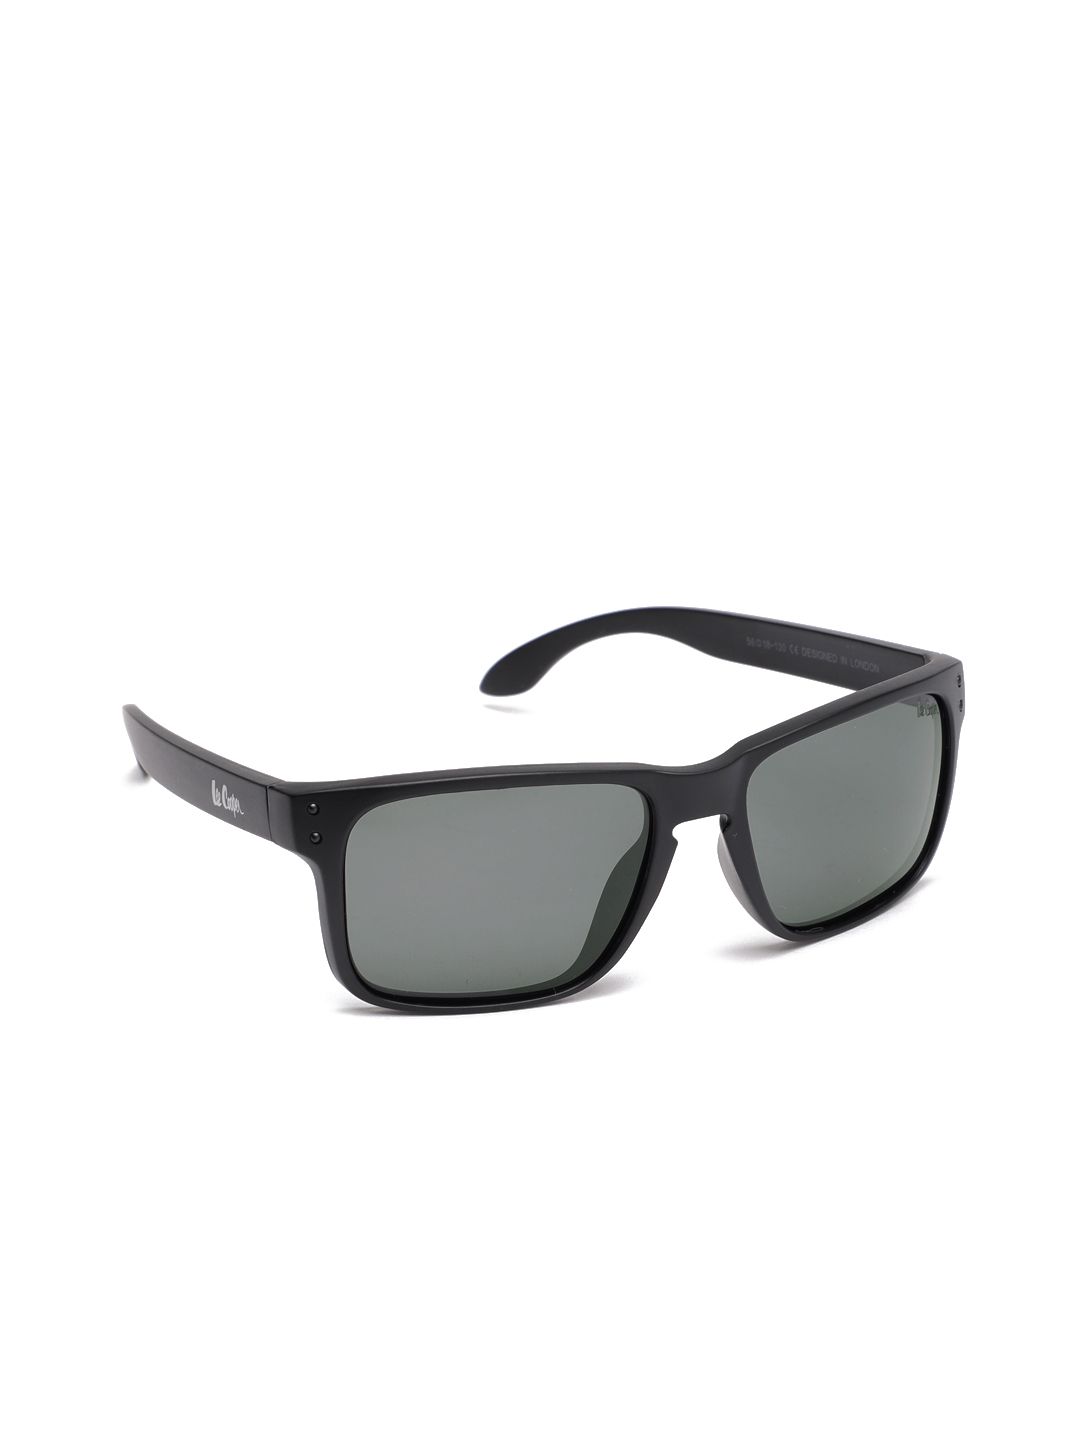 Lee Cooper Unisex Rectangle Sunglasses LC9137 BLK Price in India